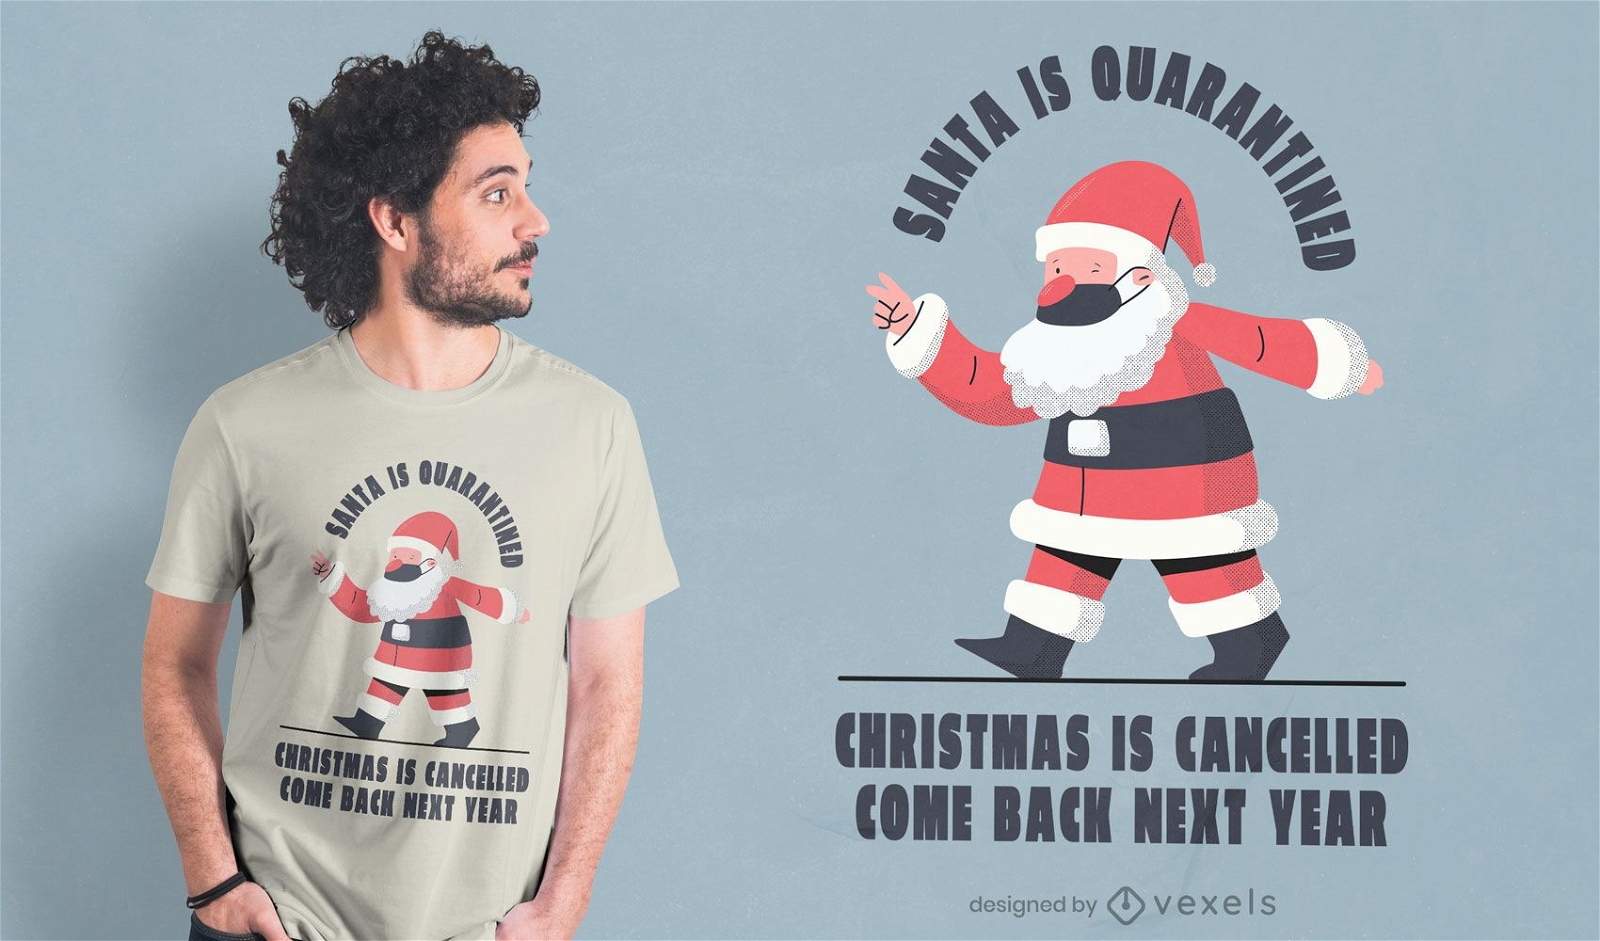 Diseño de camiseta navideño cancelado